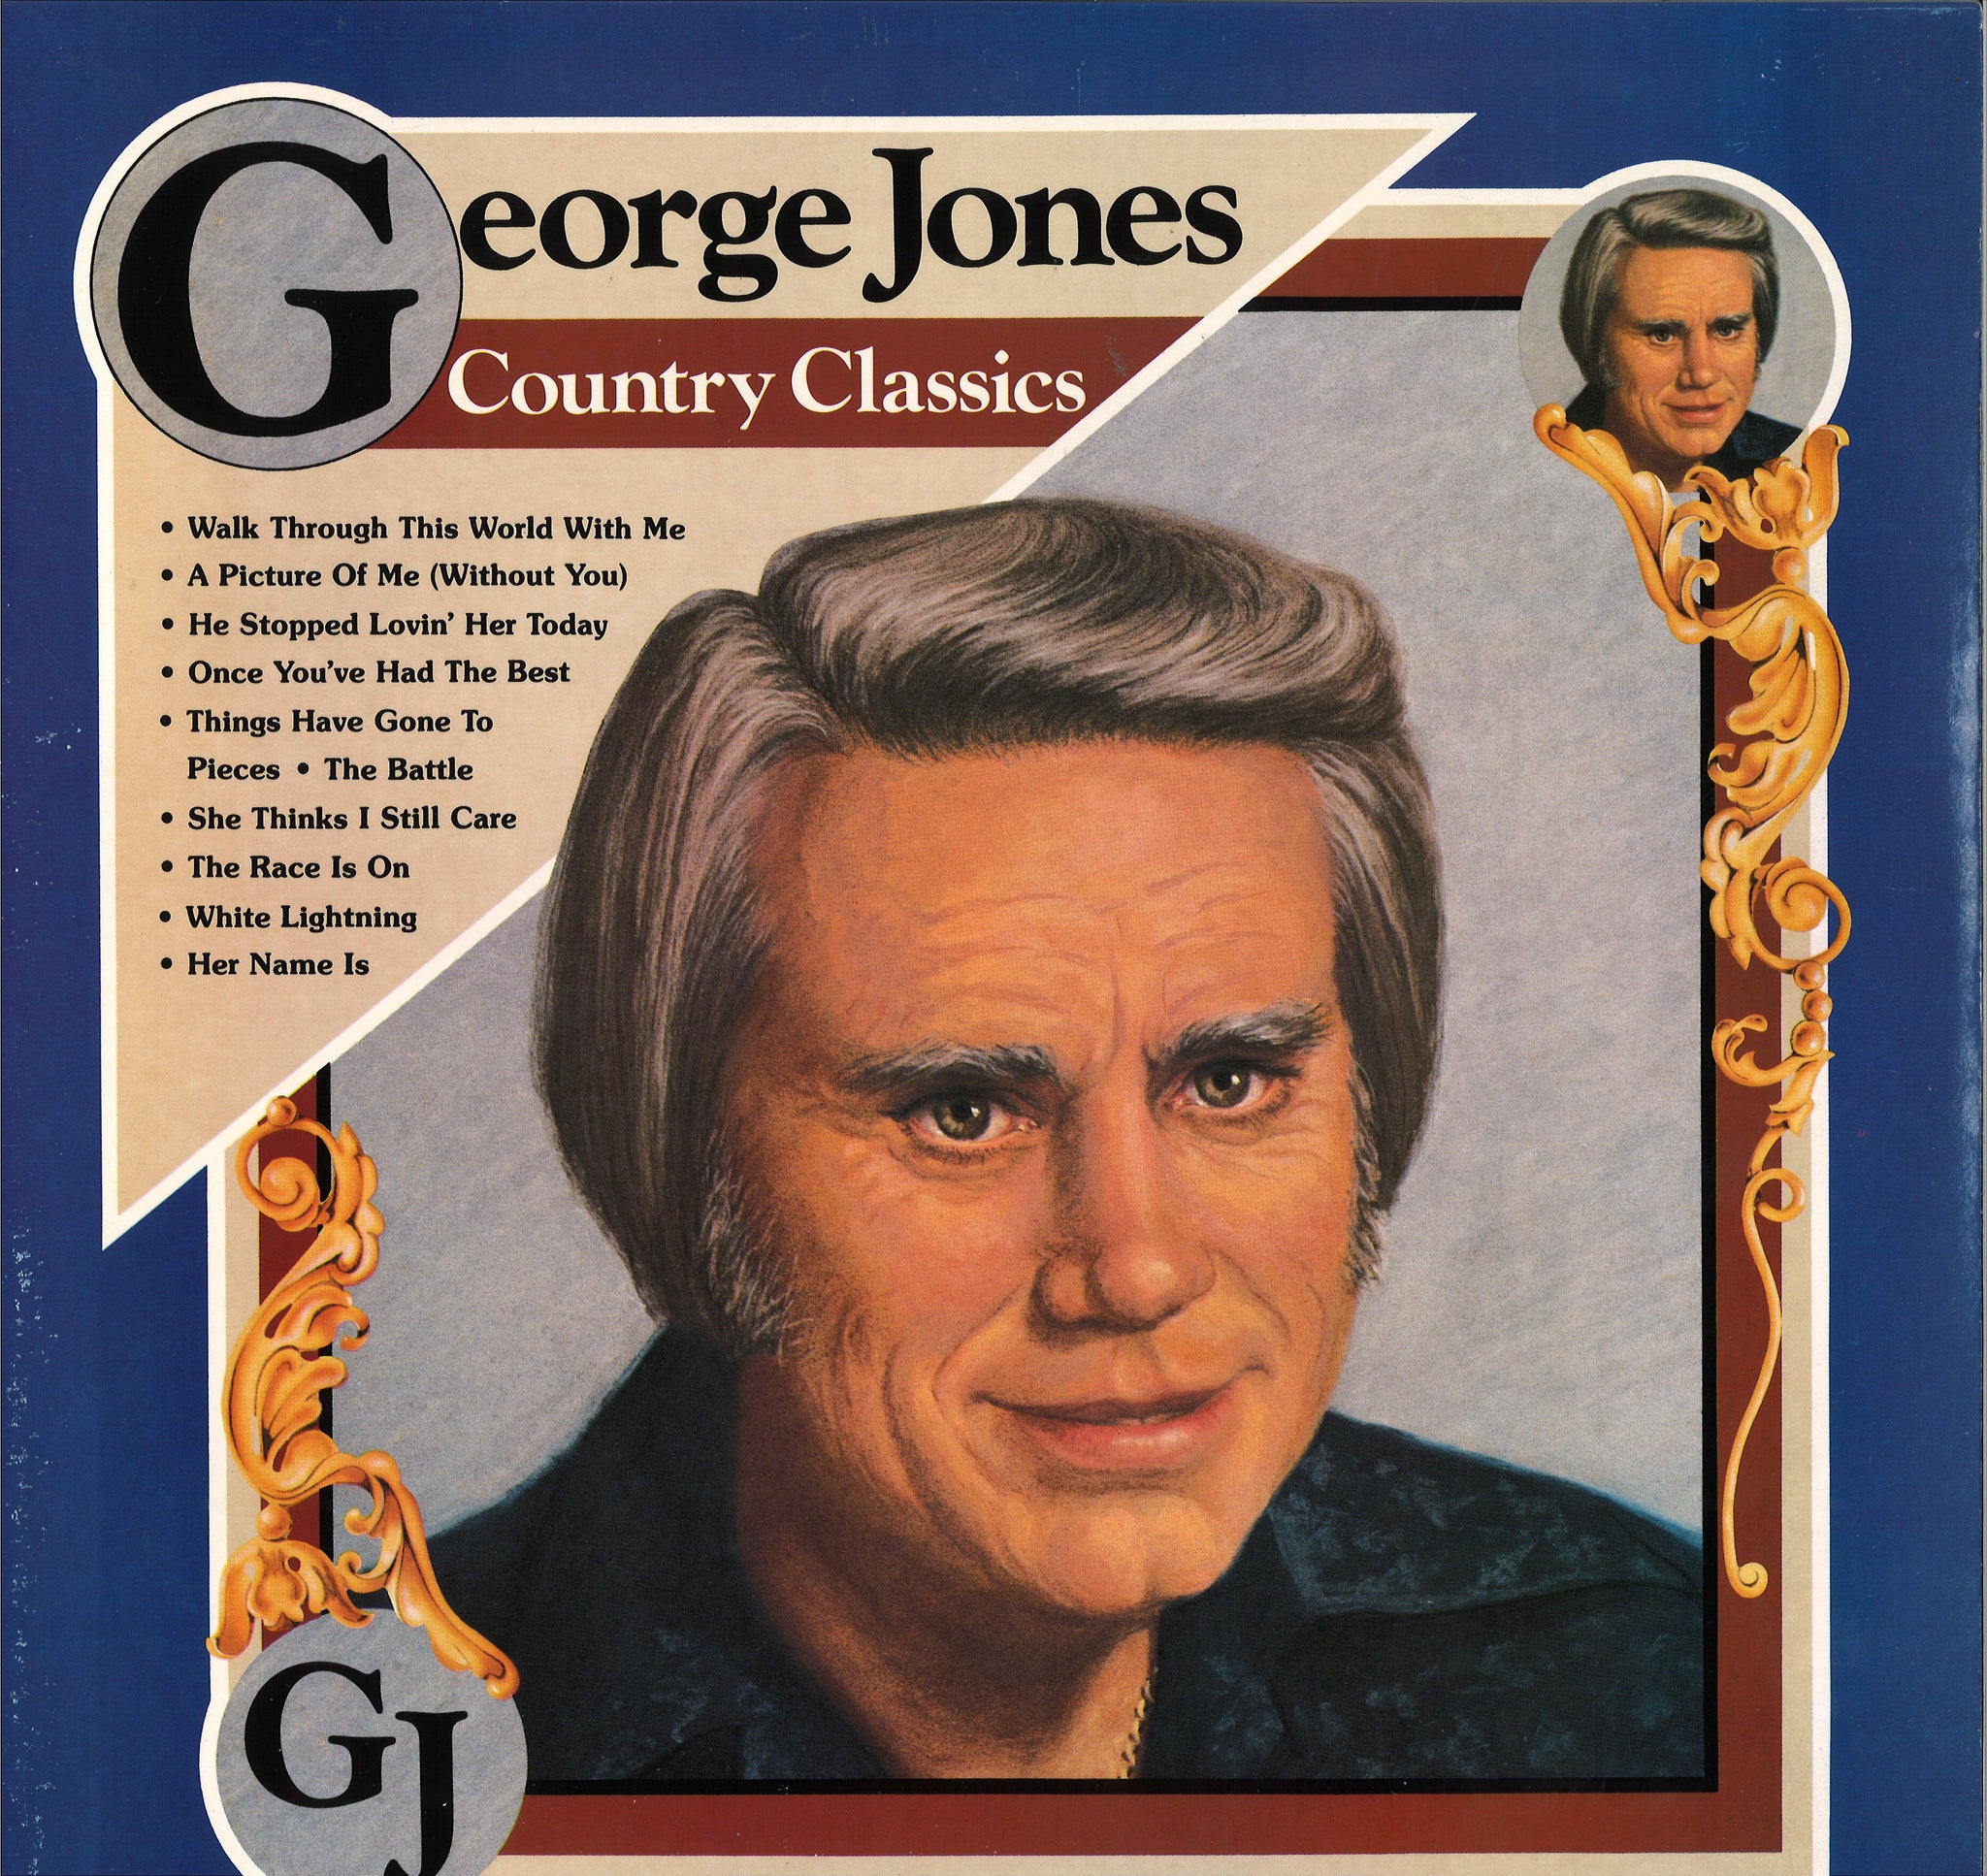 George Jones Country Classics